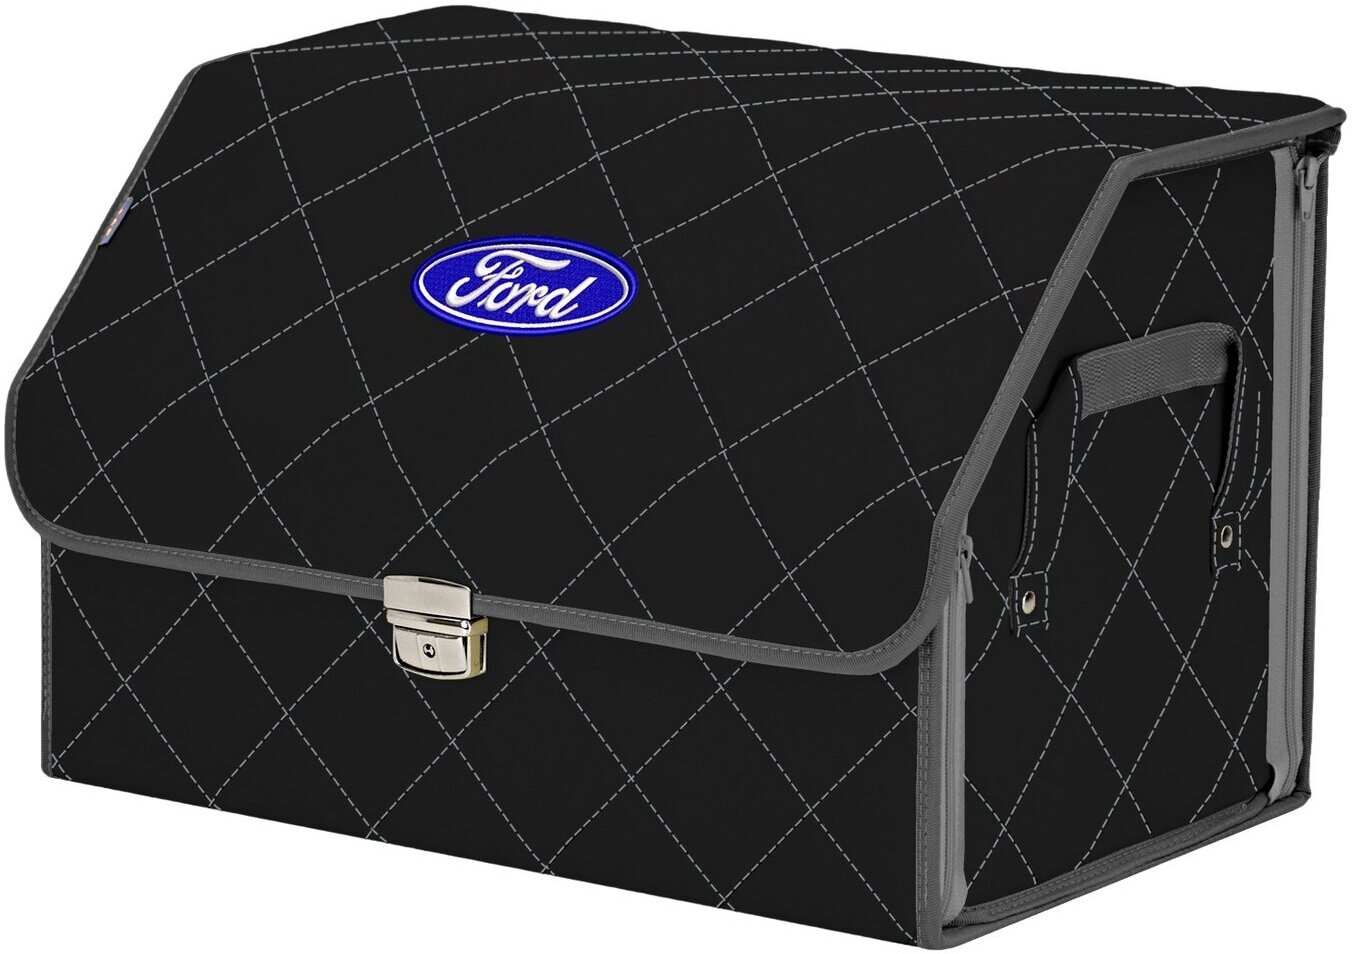 Органайзер-саквояж в багажник "Союз Премиум" (размер L). Цвет: черный с серой прострочкой Ромб и вышивкой Ford (Форд).